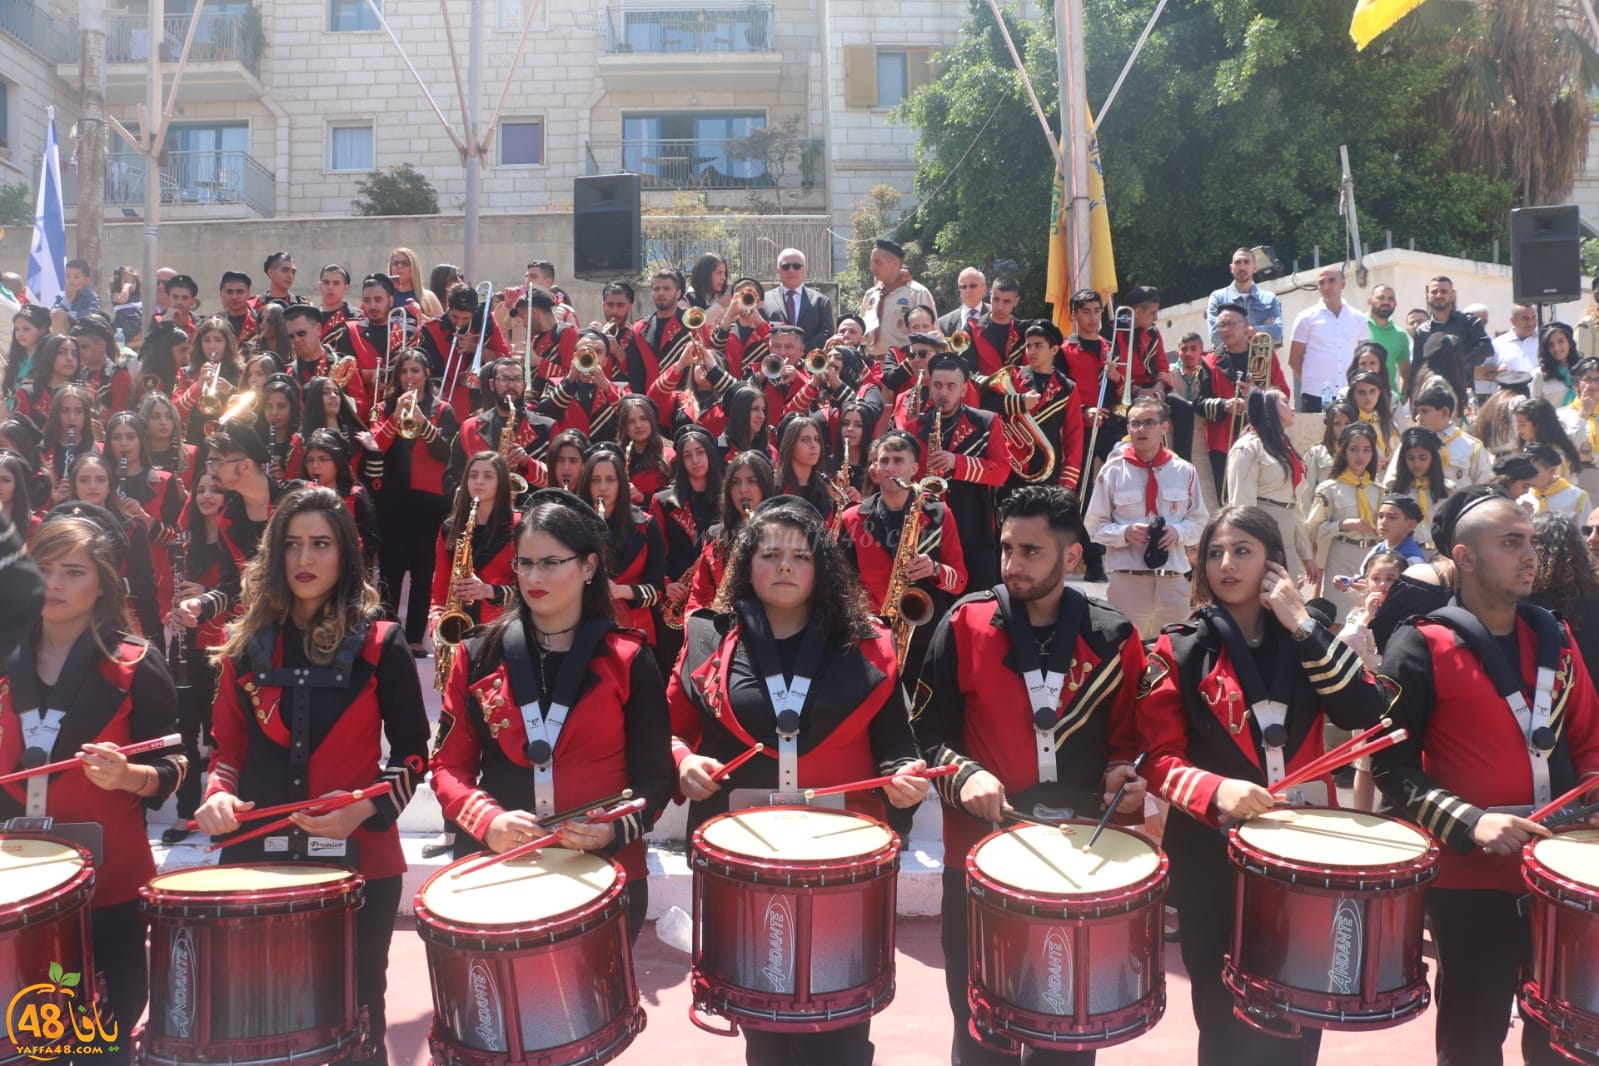 بالفيديو: استعراض كشفي ضخم في مدينة يافا بمناسبة عيد الفصح المجيد التقبيلة